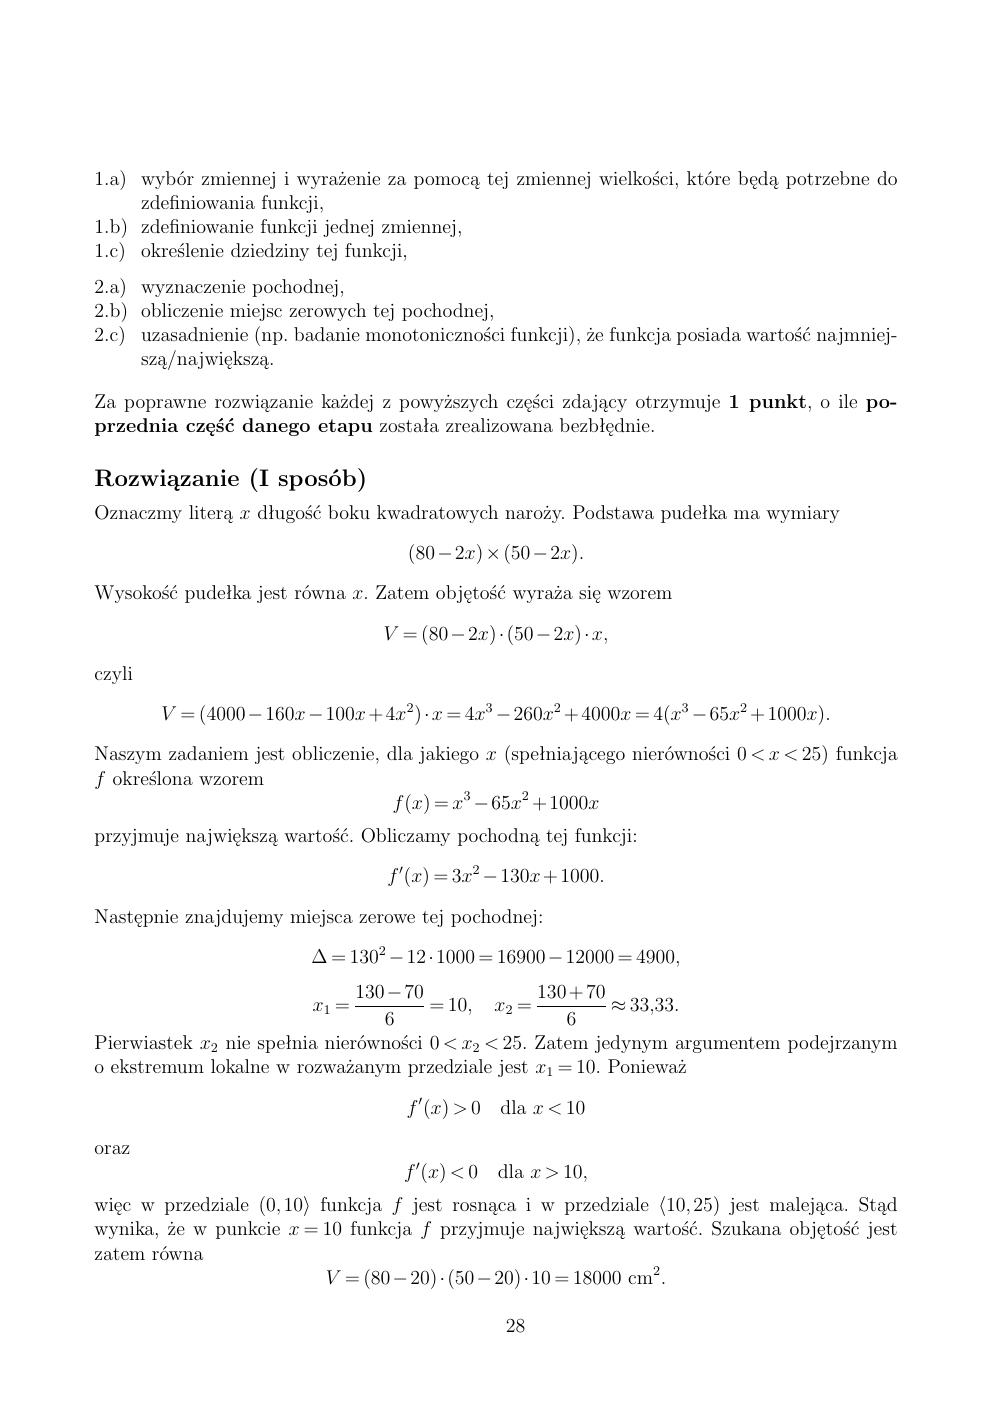 zasady oceniania - odpowiedzi - matematyka rozszerzony - matura 2015 przykładowa-28